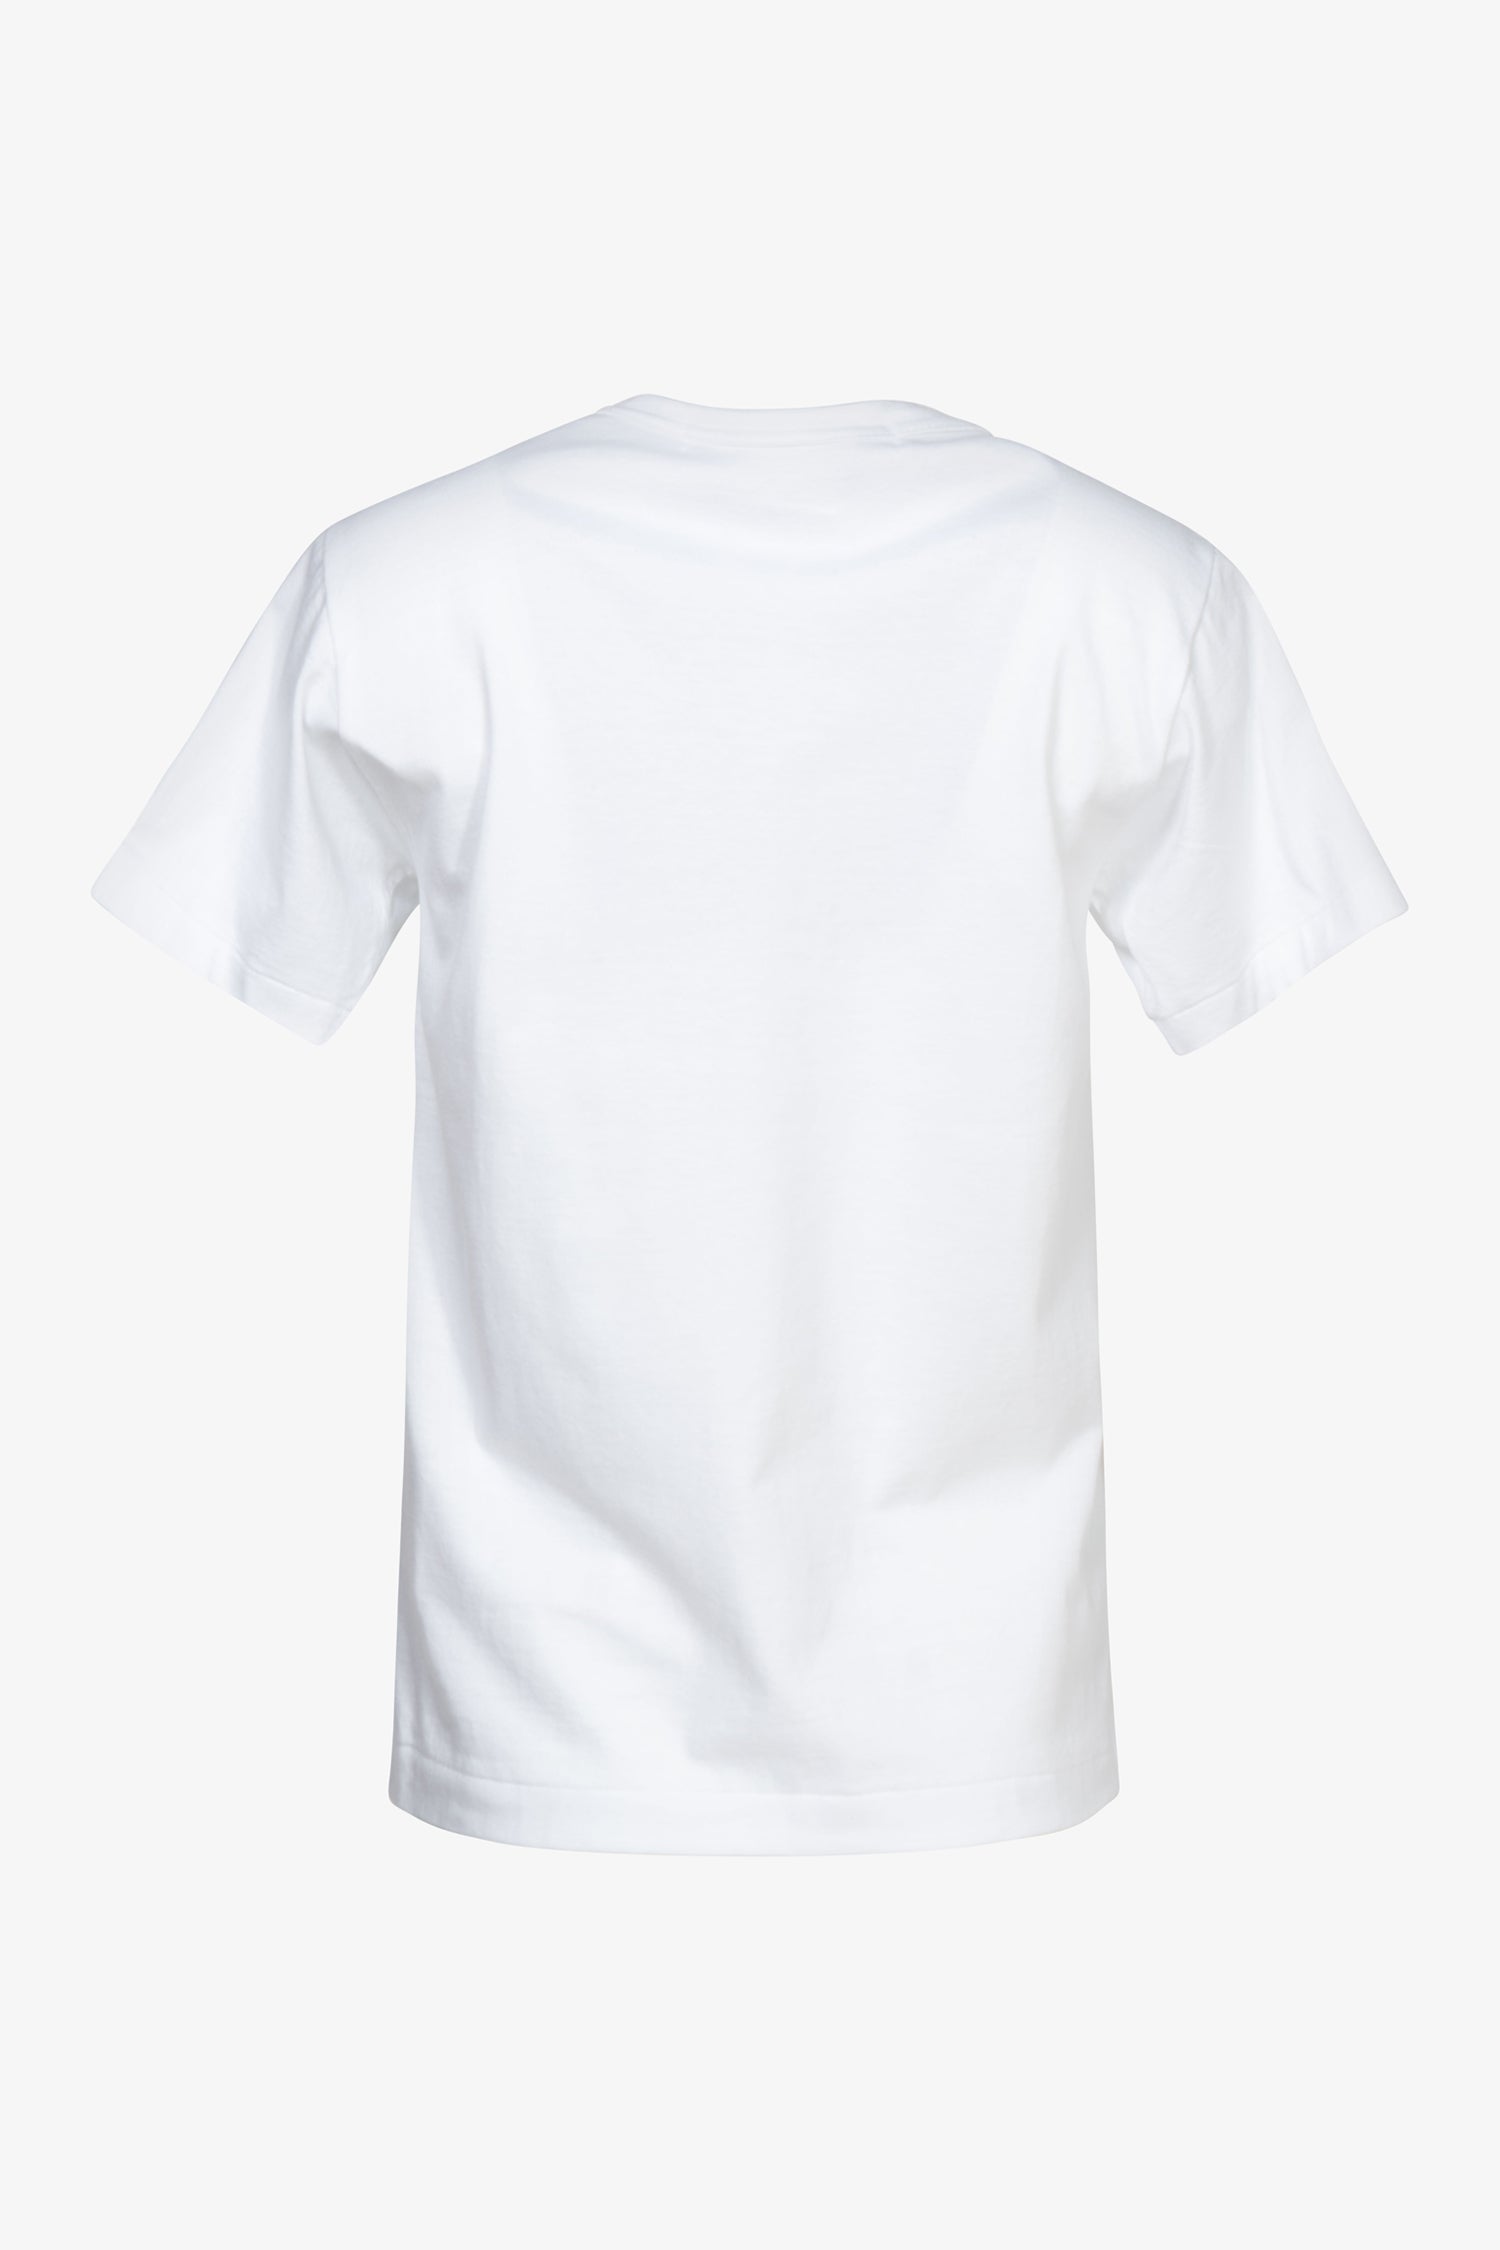 Selectshop FRAME - COMME DES GARÇONS COMME DES GARÇONS Ruffles Embroidery T-Shirt T-Shirts Dubai